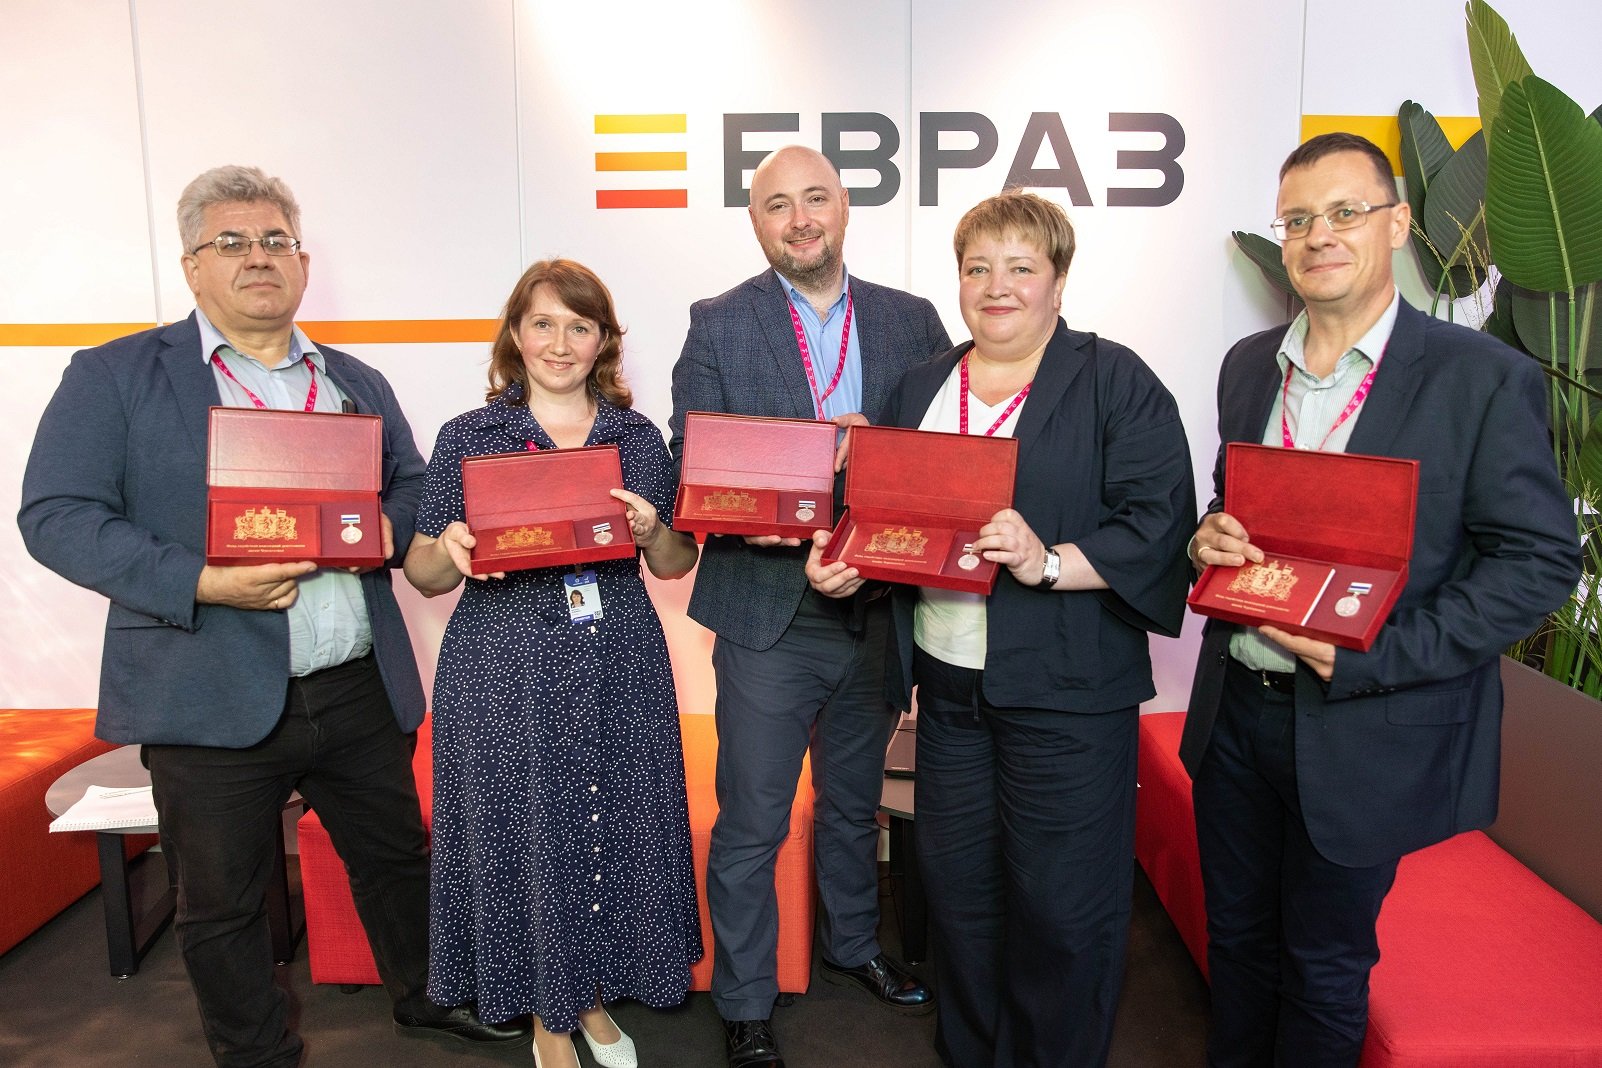 Пять сотрудников ЕВРАЗ НТМК получили премию имени Черепановых за инновации в области энергетики и прокатного производства